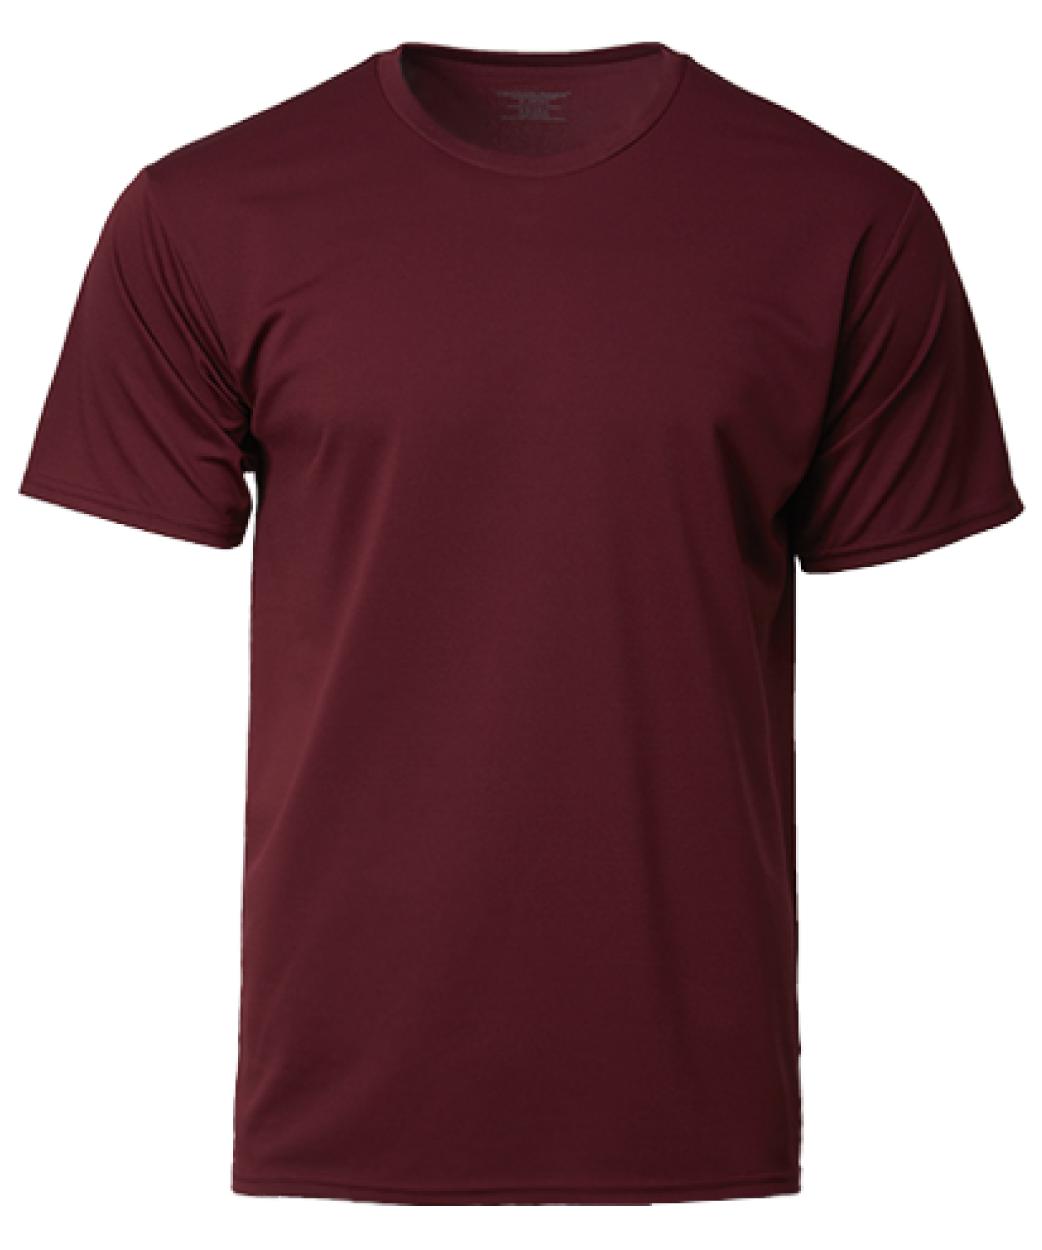 Unisex Dri Fit T-Shirts